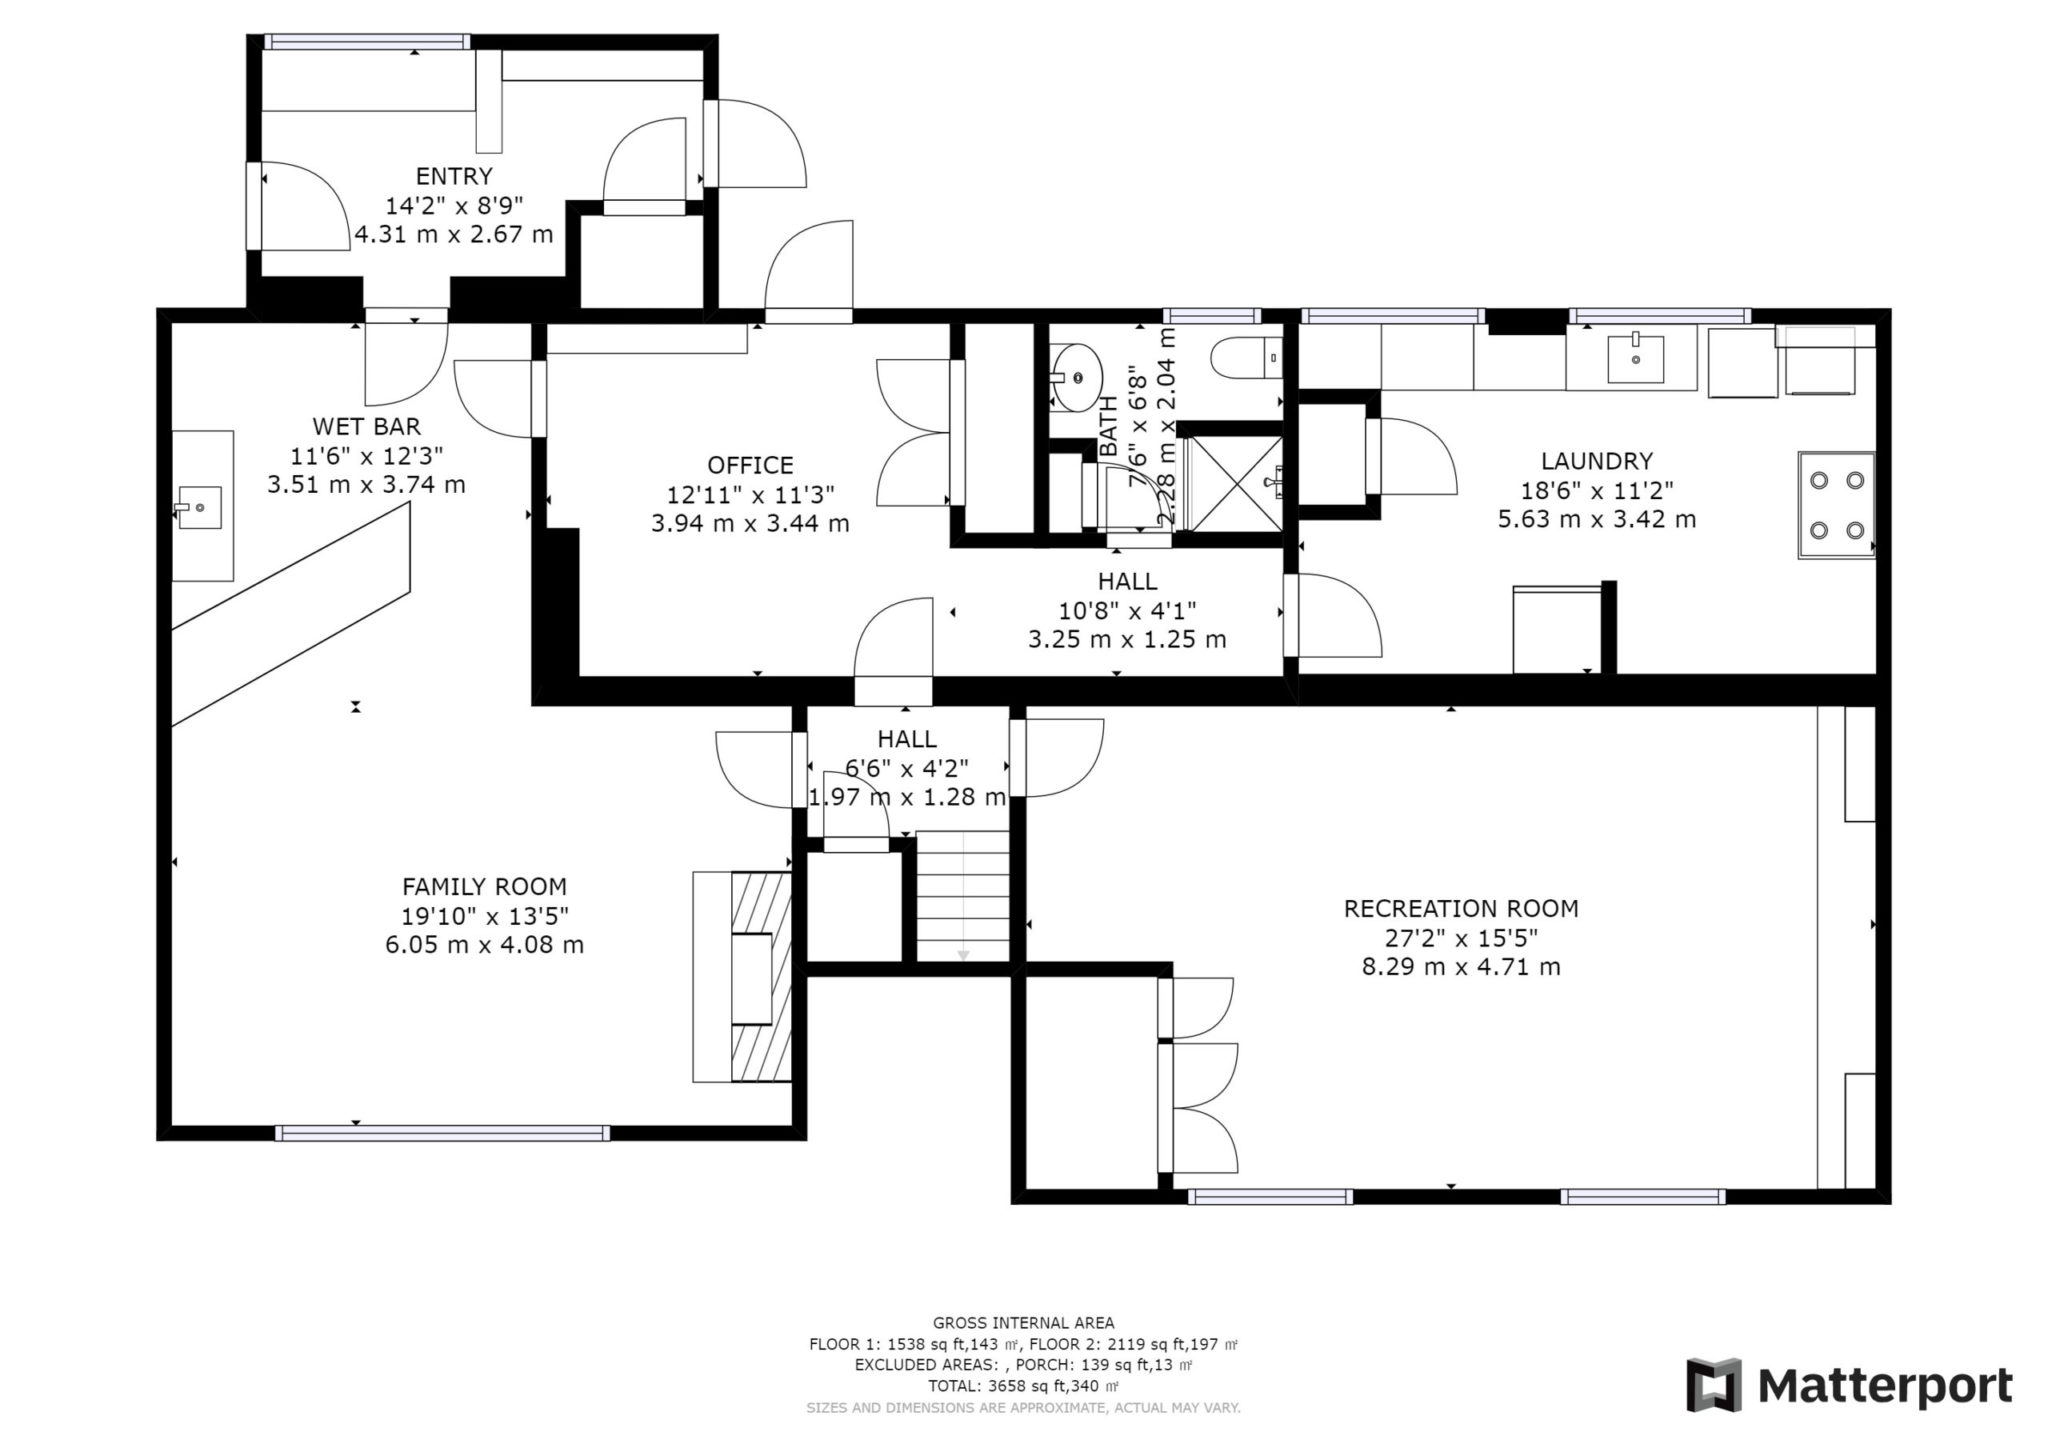 Basement level floor plans for 6 Parmbelle Cres